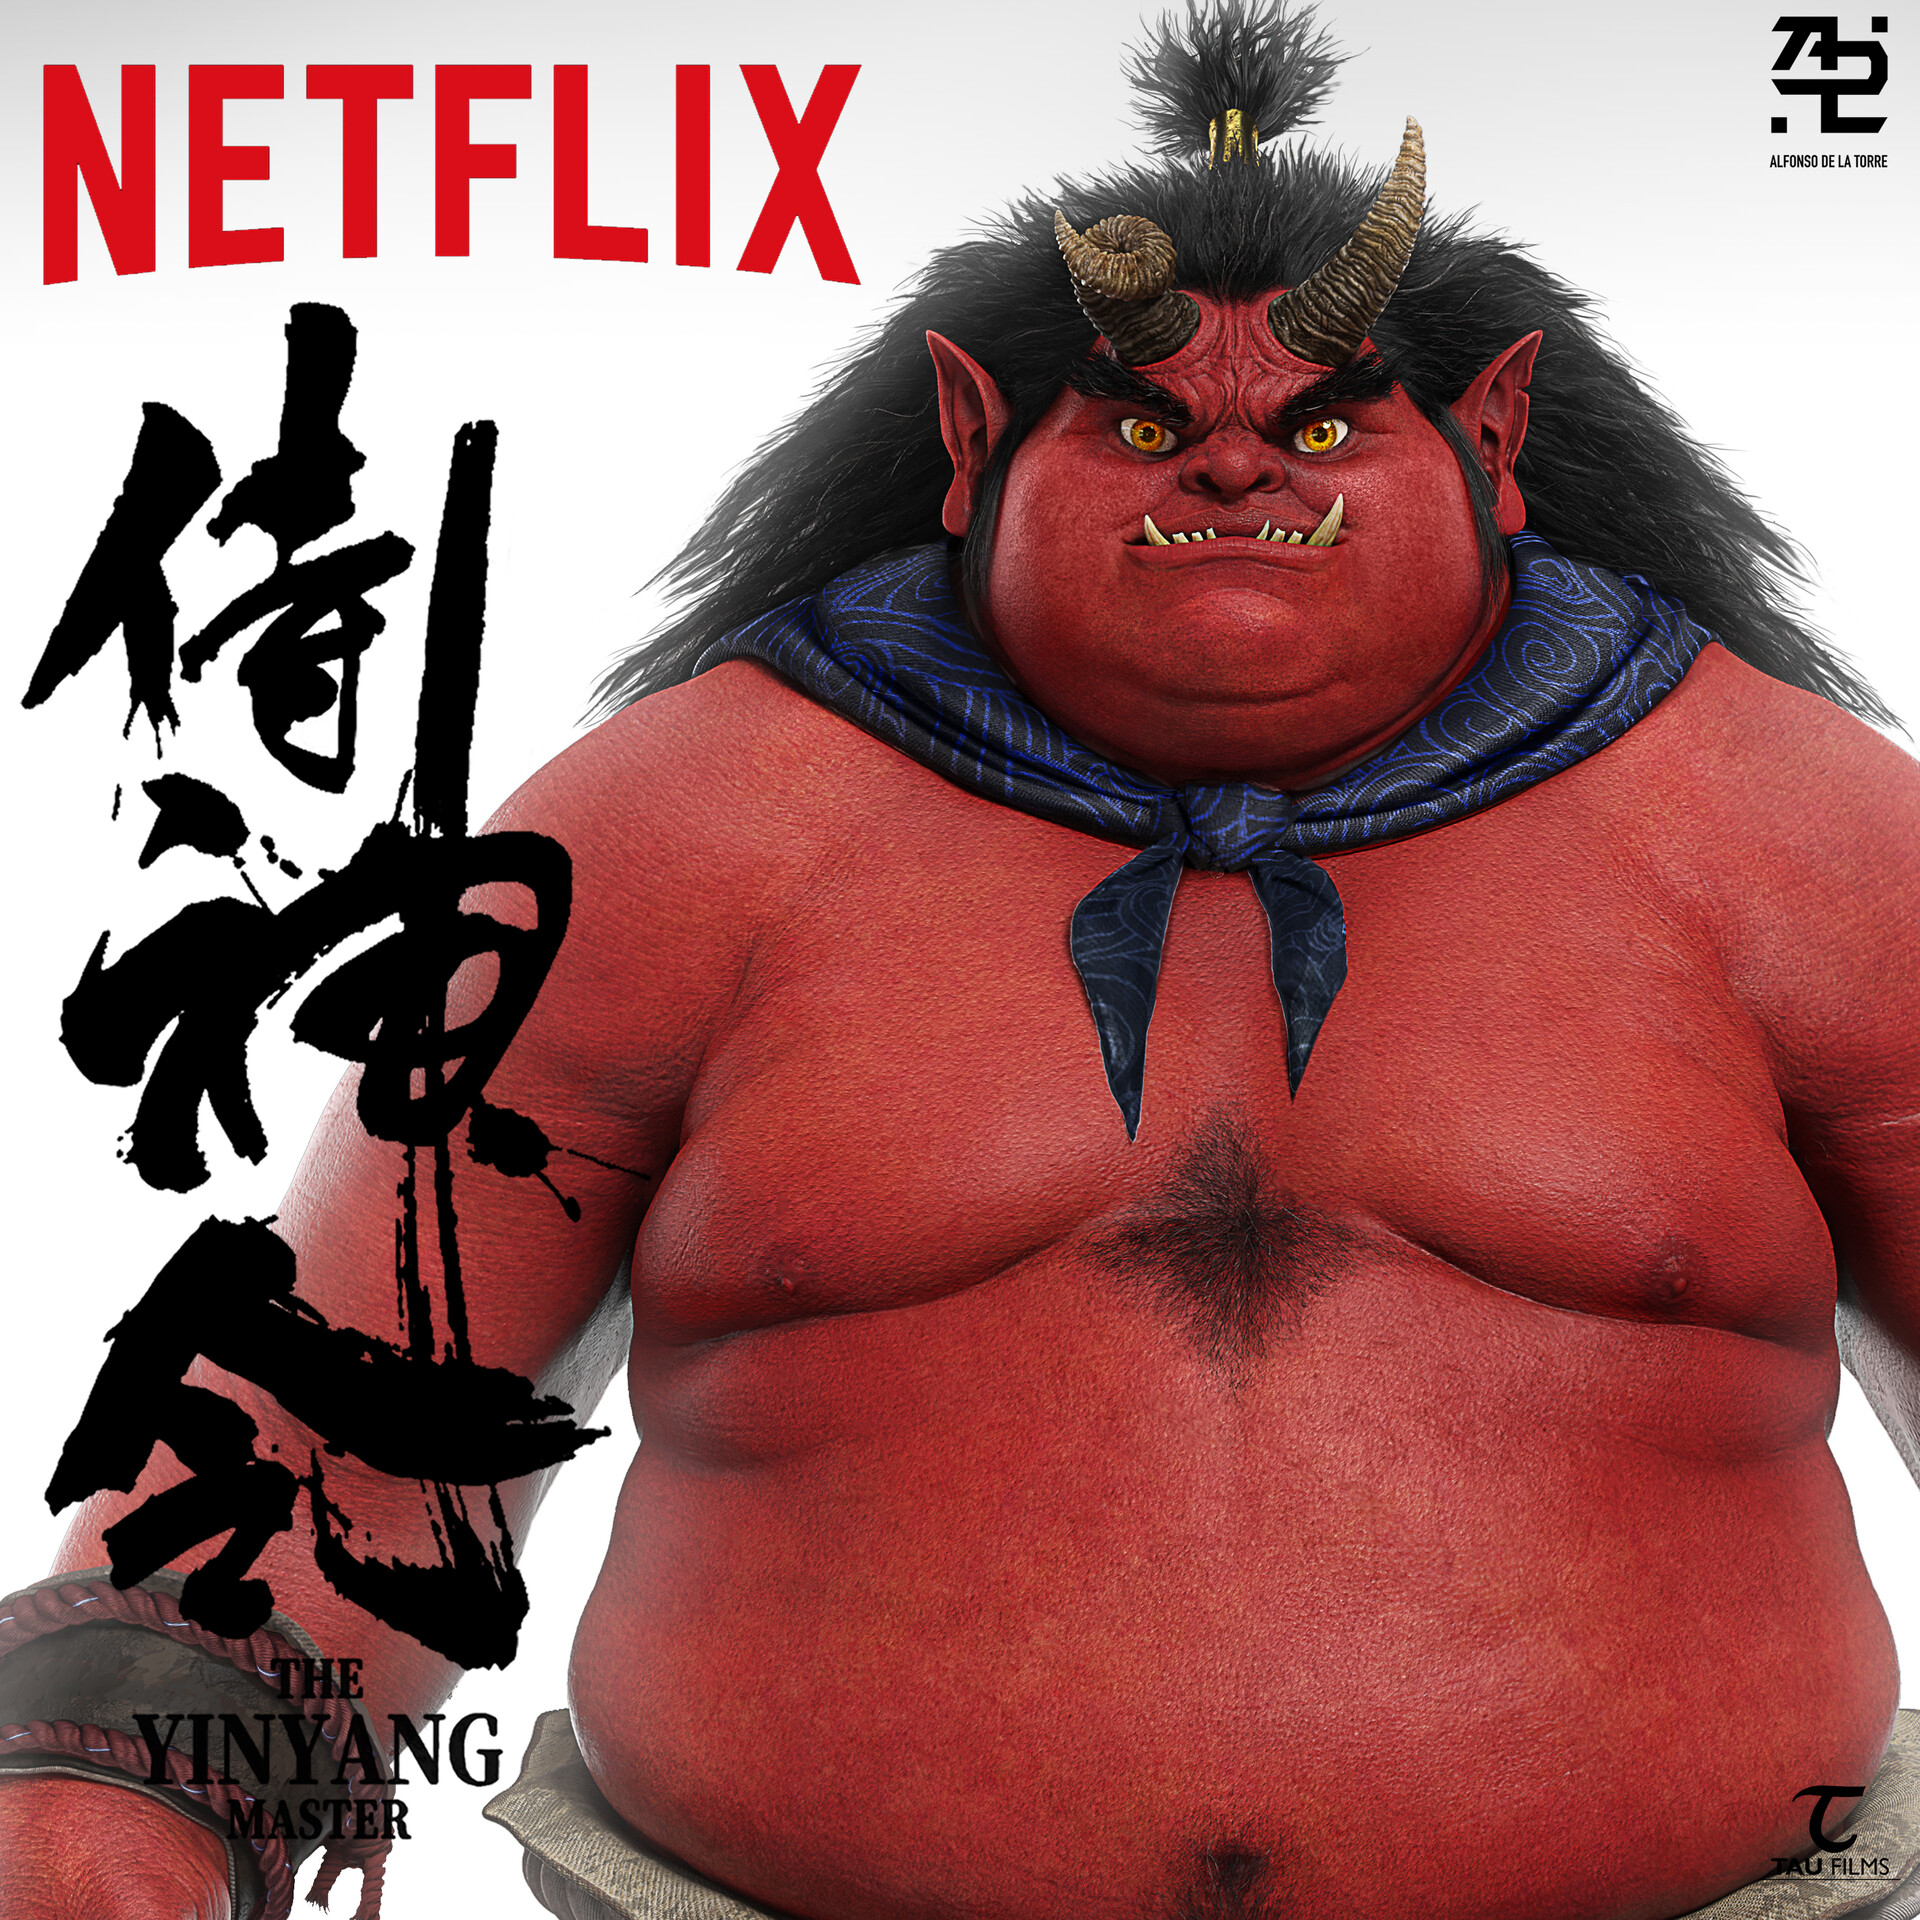 Artstation Big Red Monster For The Yin Yang Master Movie On Netflix Alfonso De La Torre